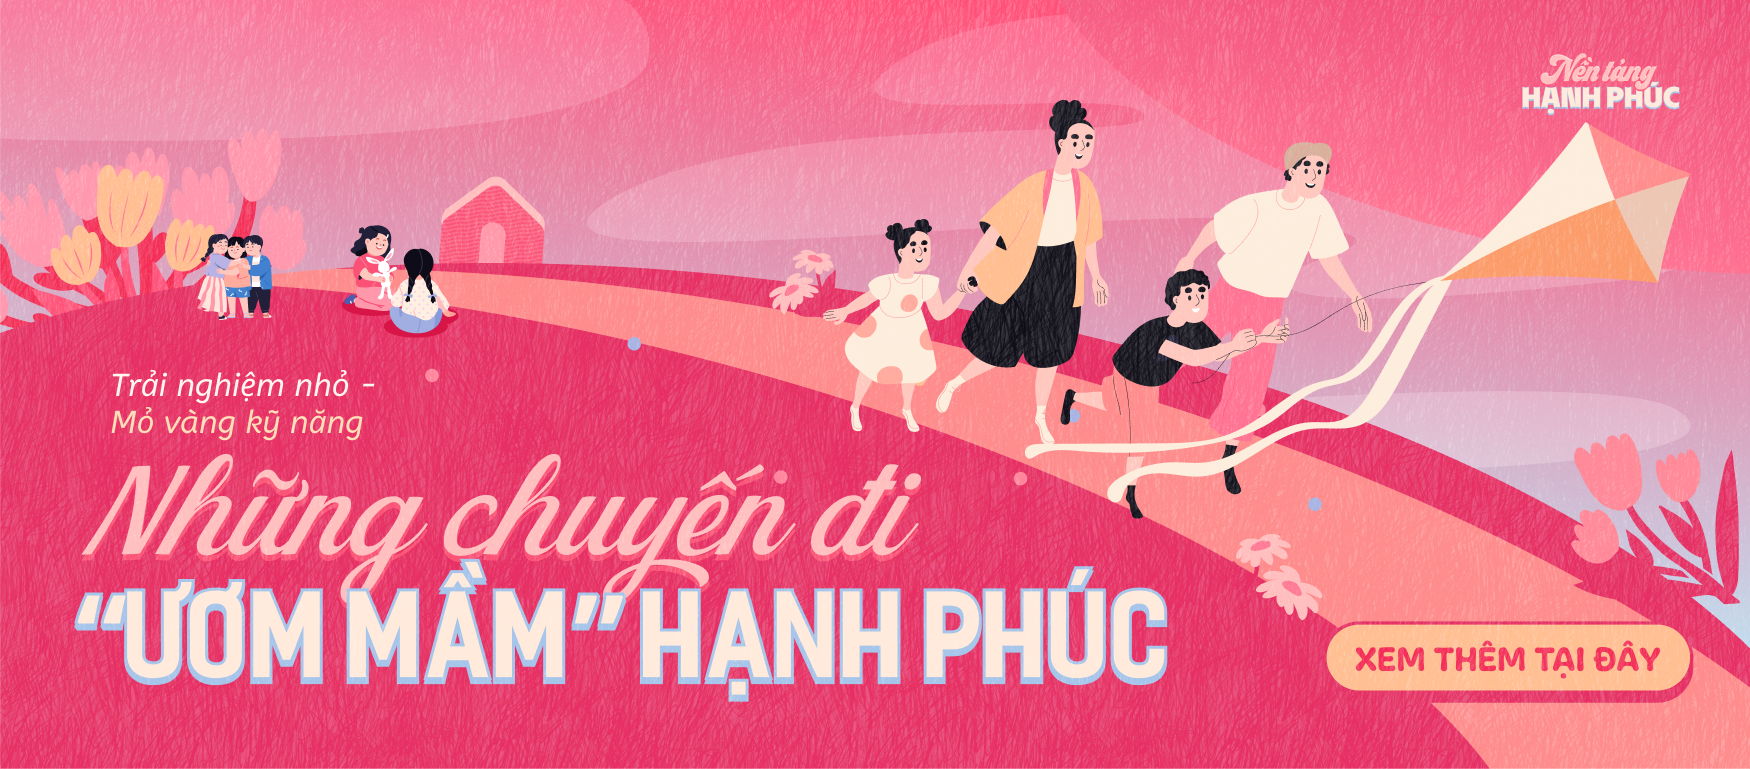 Phong cách du lịch mới của gia đình Việt: Cùng con rong ruổi khắp mọi miền đất nước, giúp con trải nghiệm nhiều kỹ năng sống - Ảnh 5.